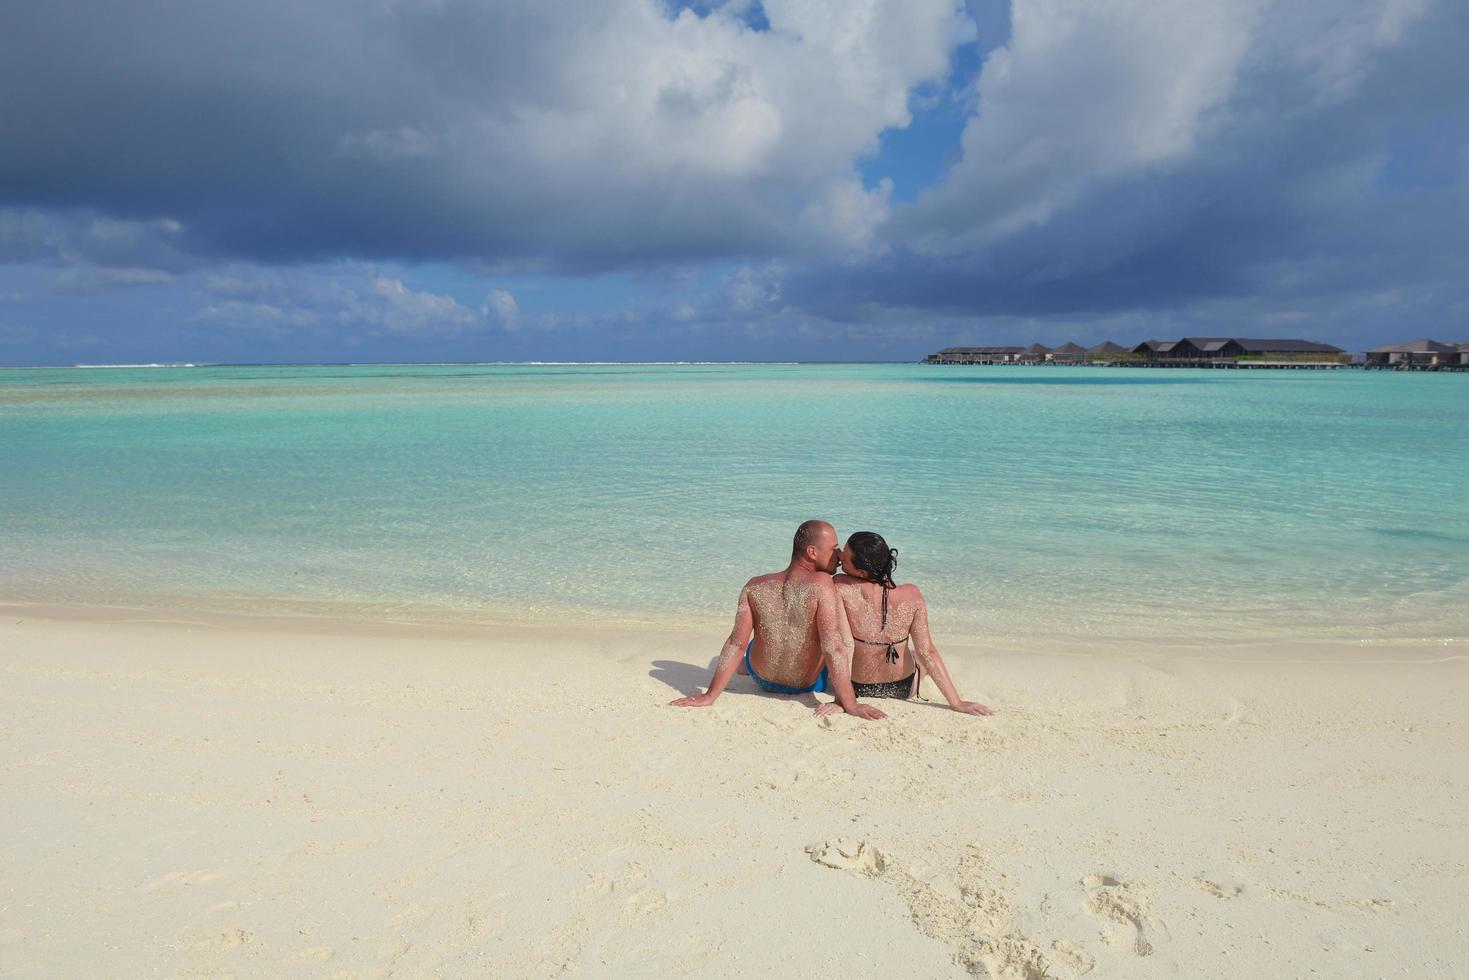 casal jovem feliz nas férias de verão se divertir e relaxar na praia foto